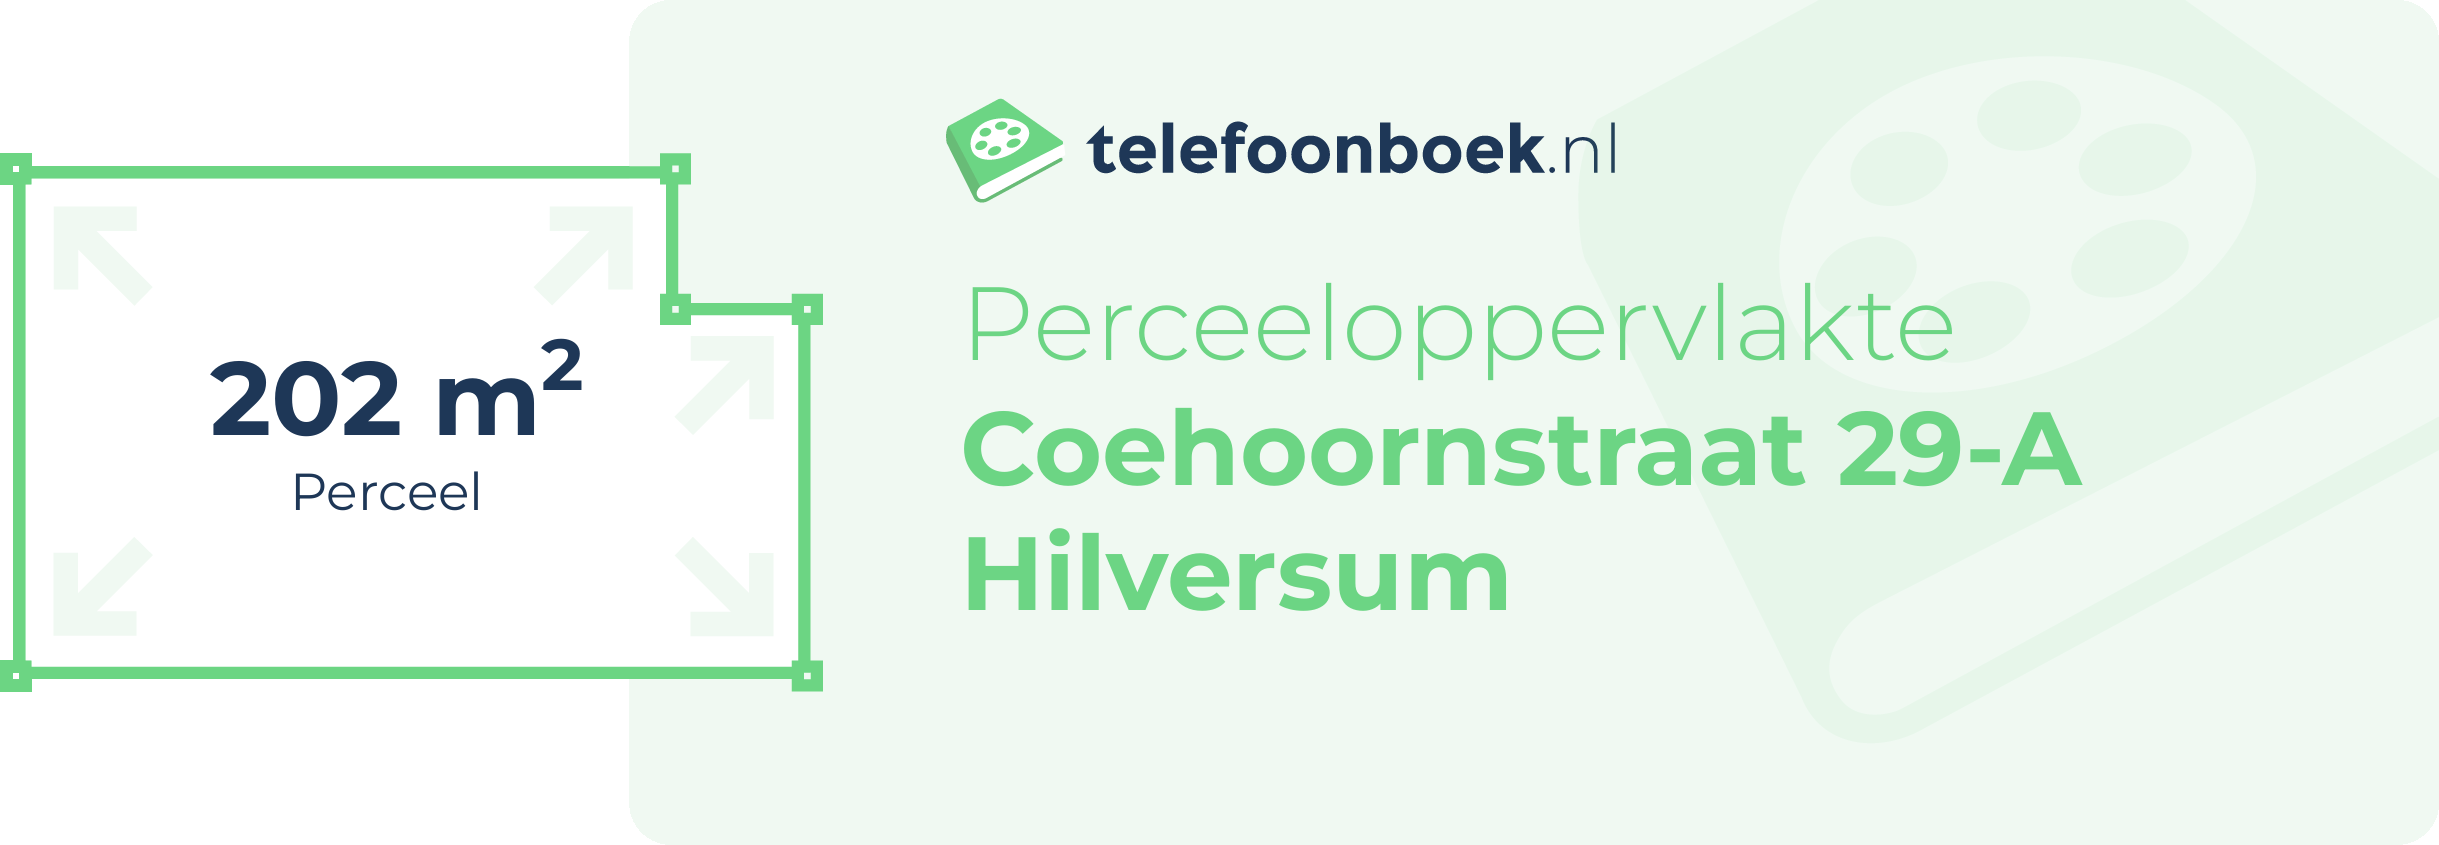 Perceeloppervlakte Coehoornstraat 29-A Hilversum